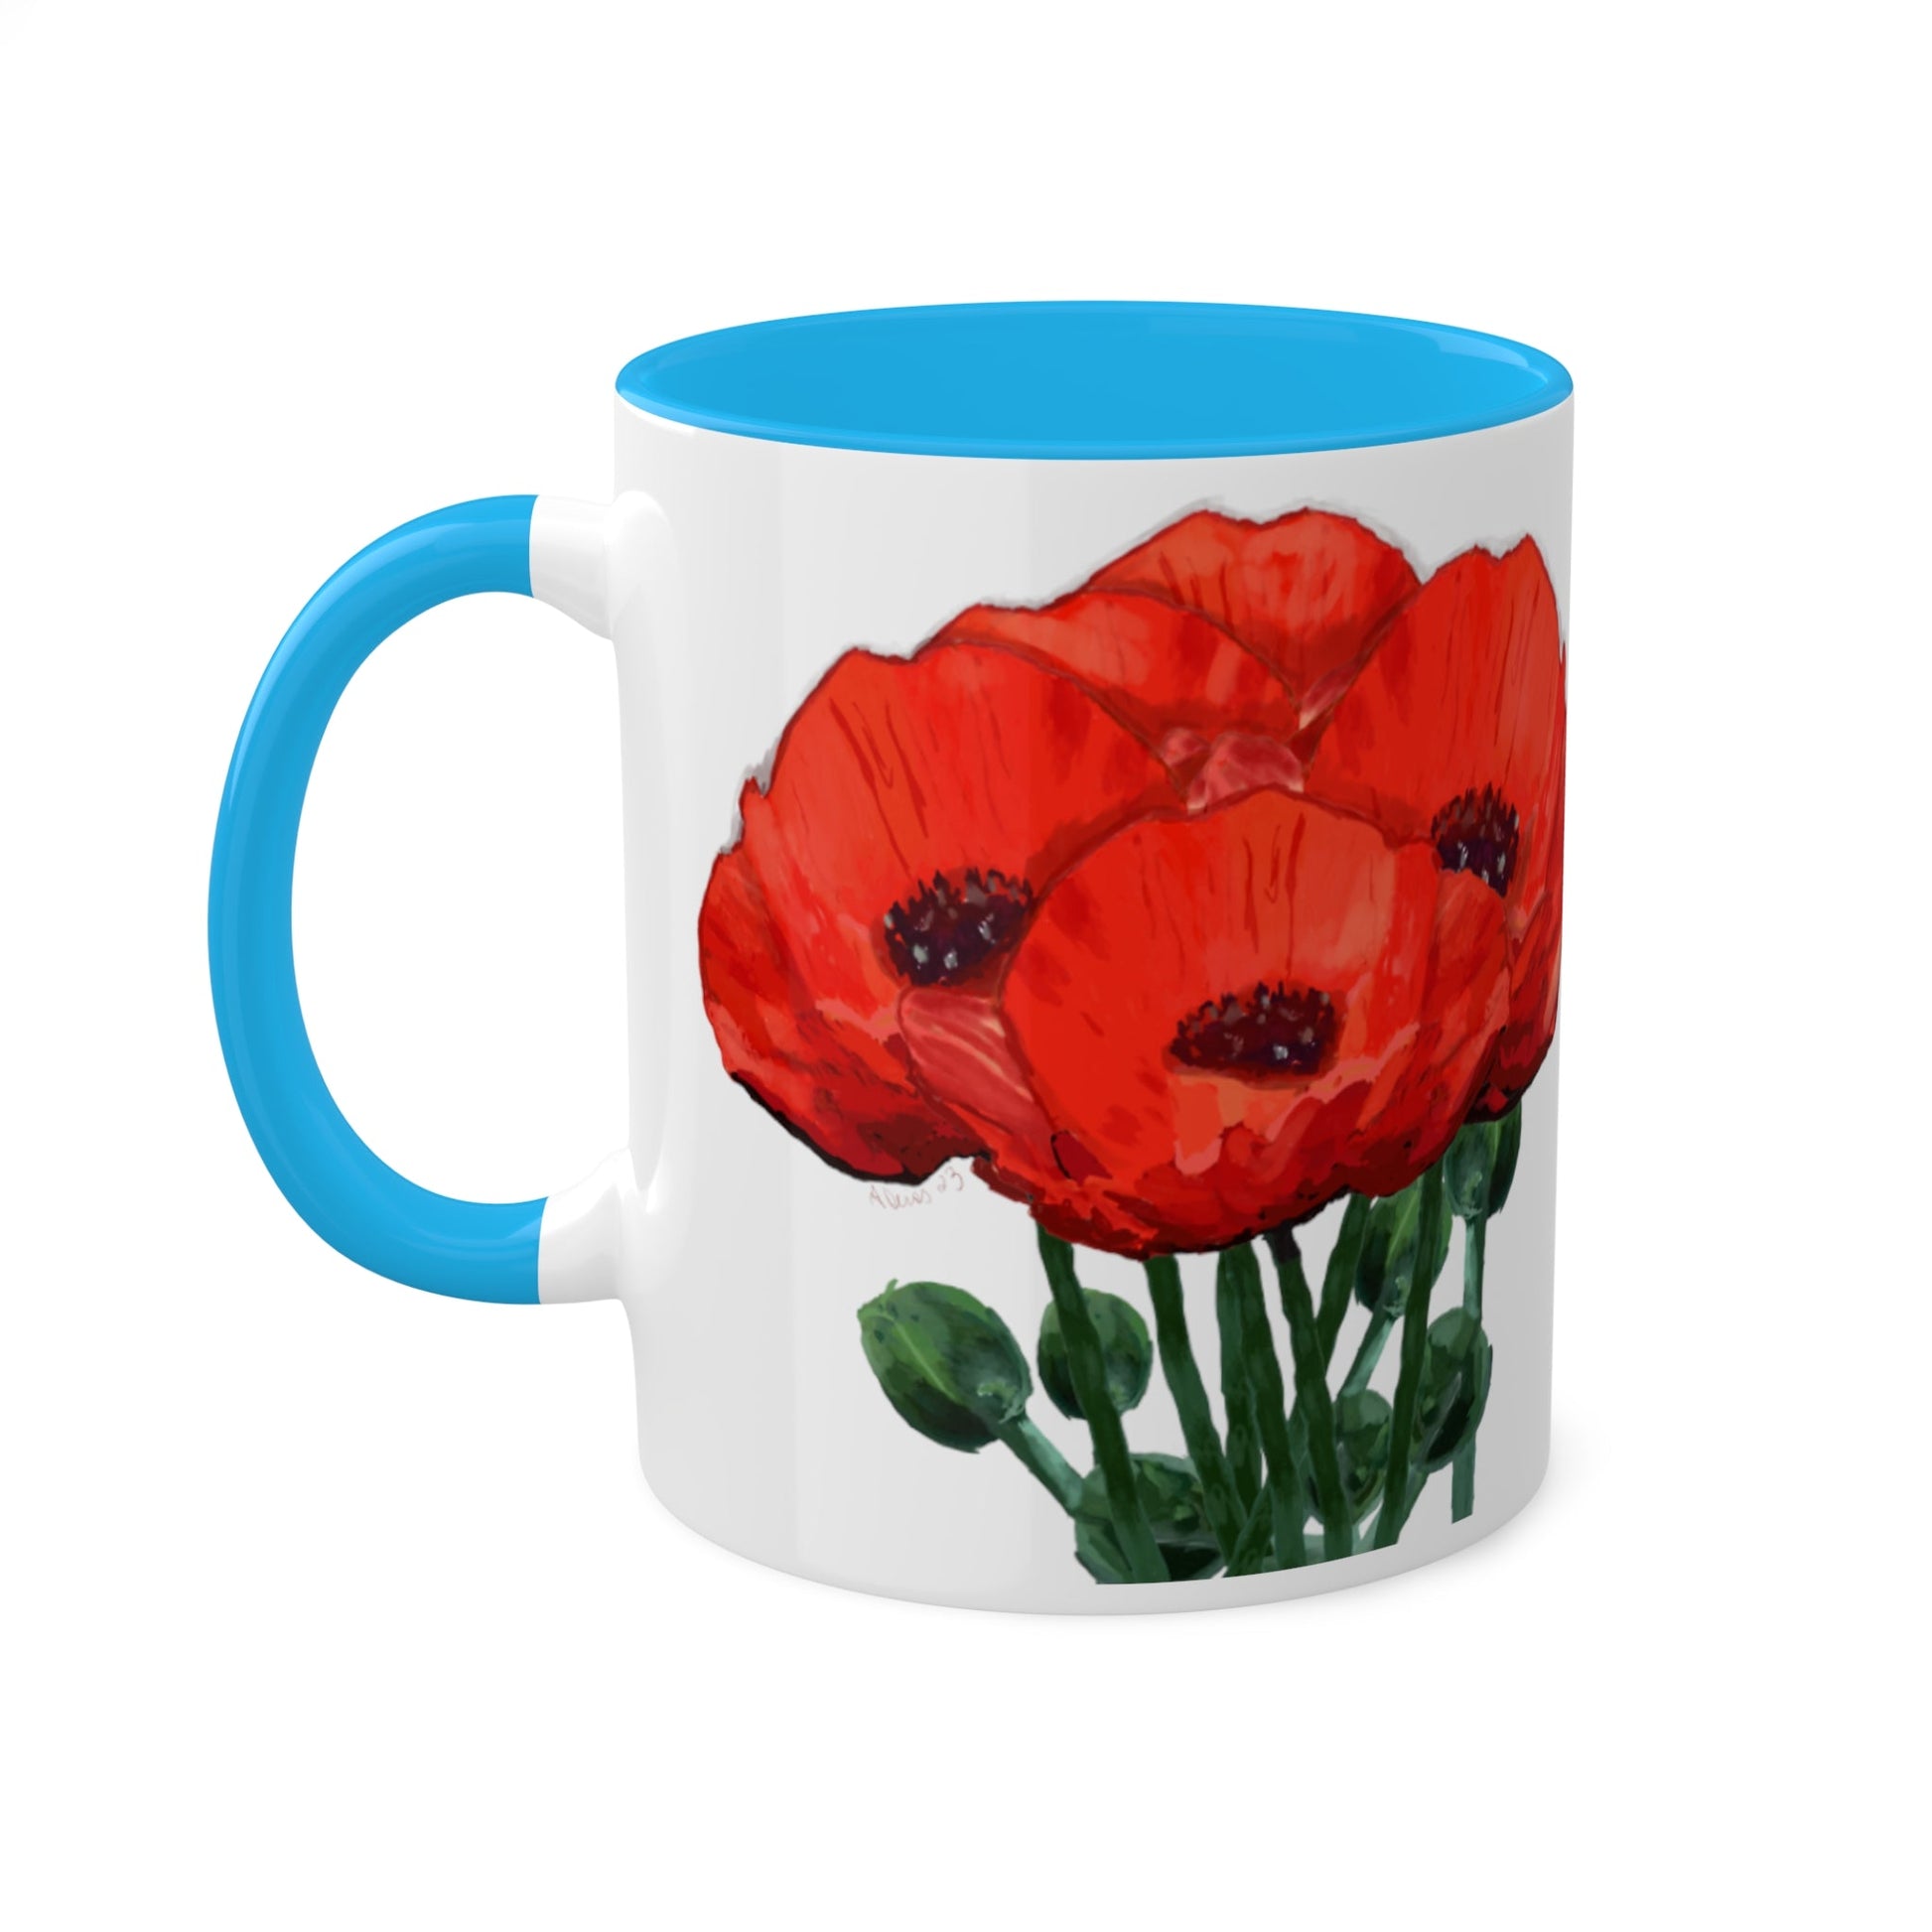 Poppies Two-Tone Coffee Mug, 11oz - Blue Cava